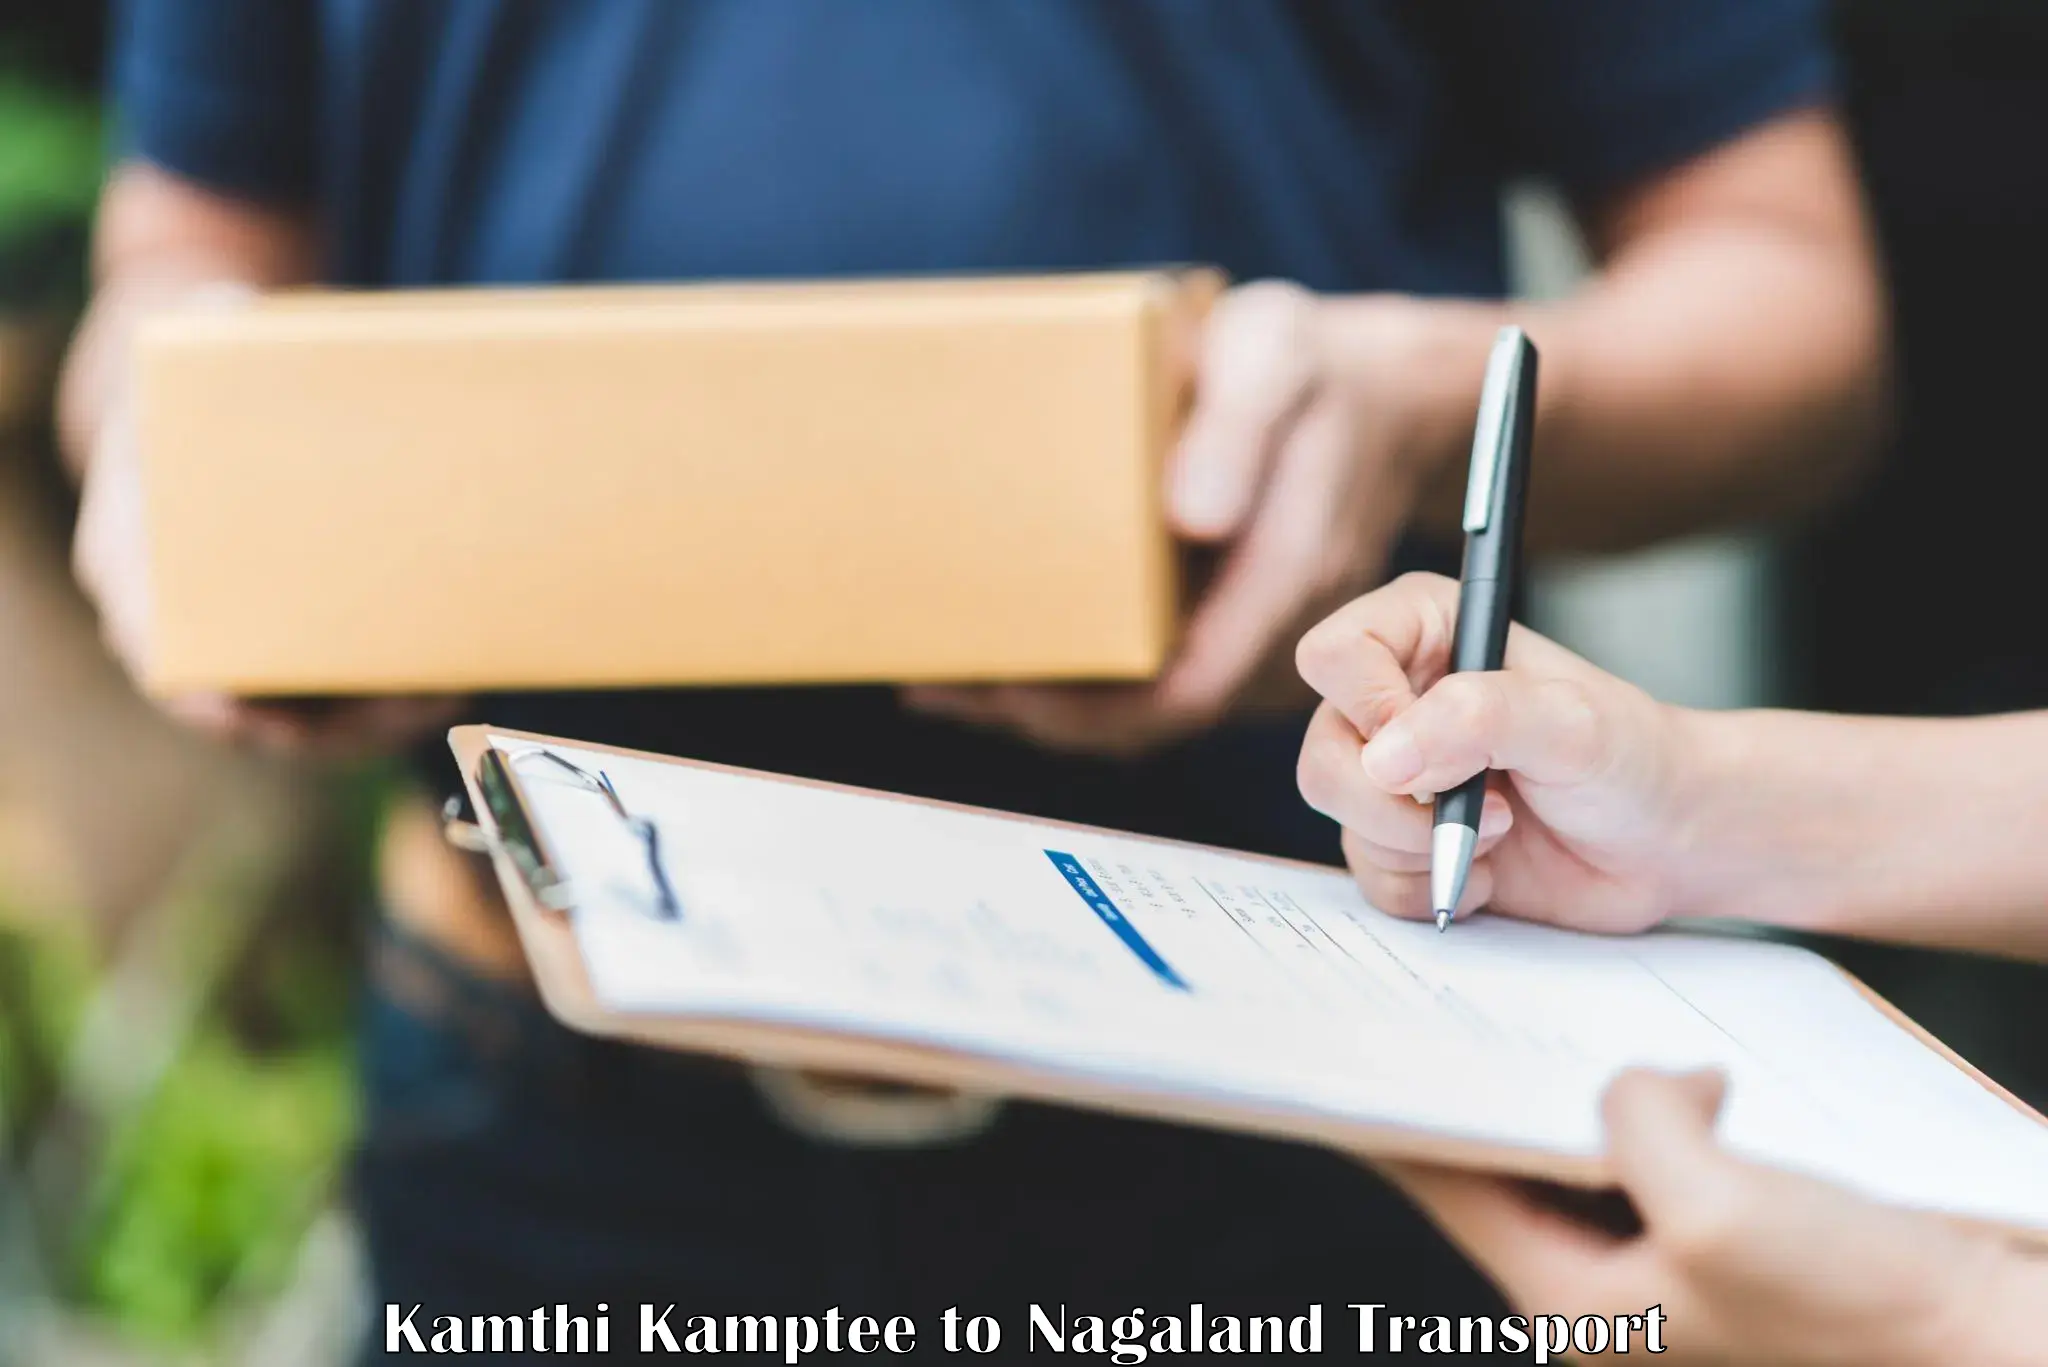 Shipping partner Kamthi Kamptee to NIT Nagaland